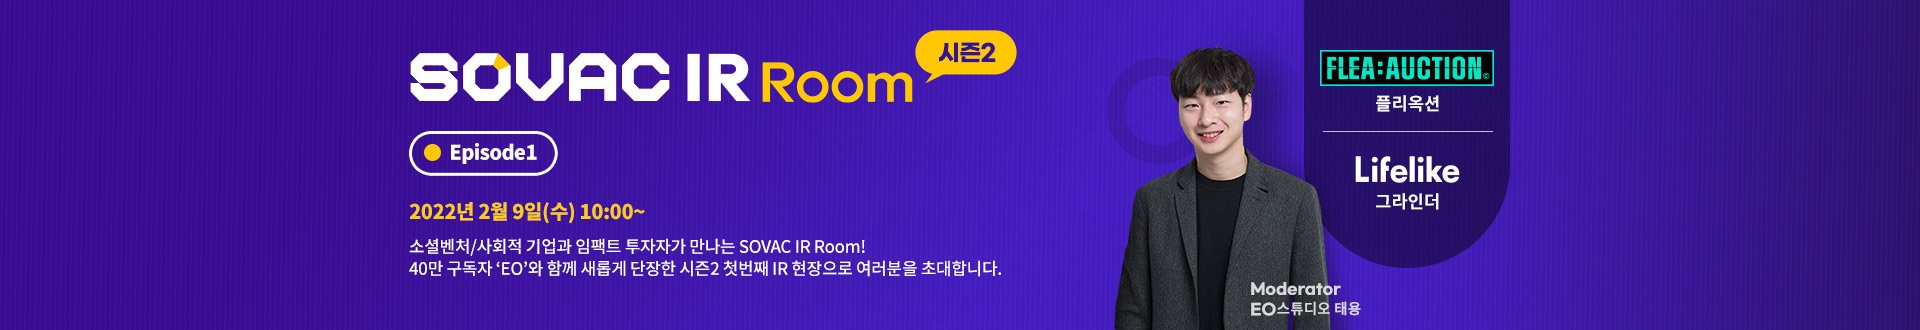 IR Room 시즌2 Episode1